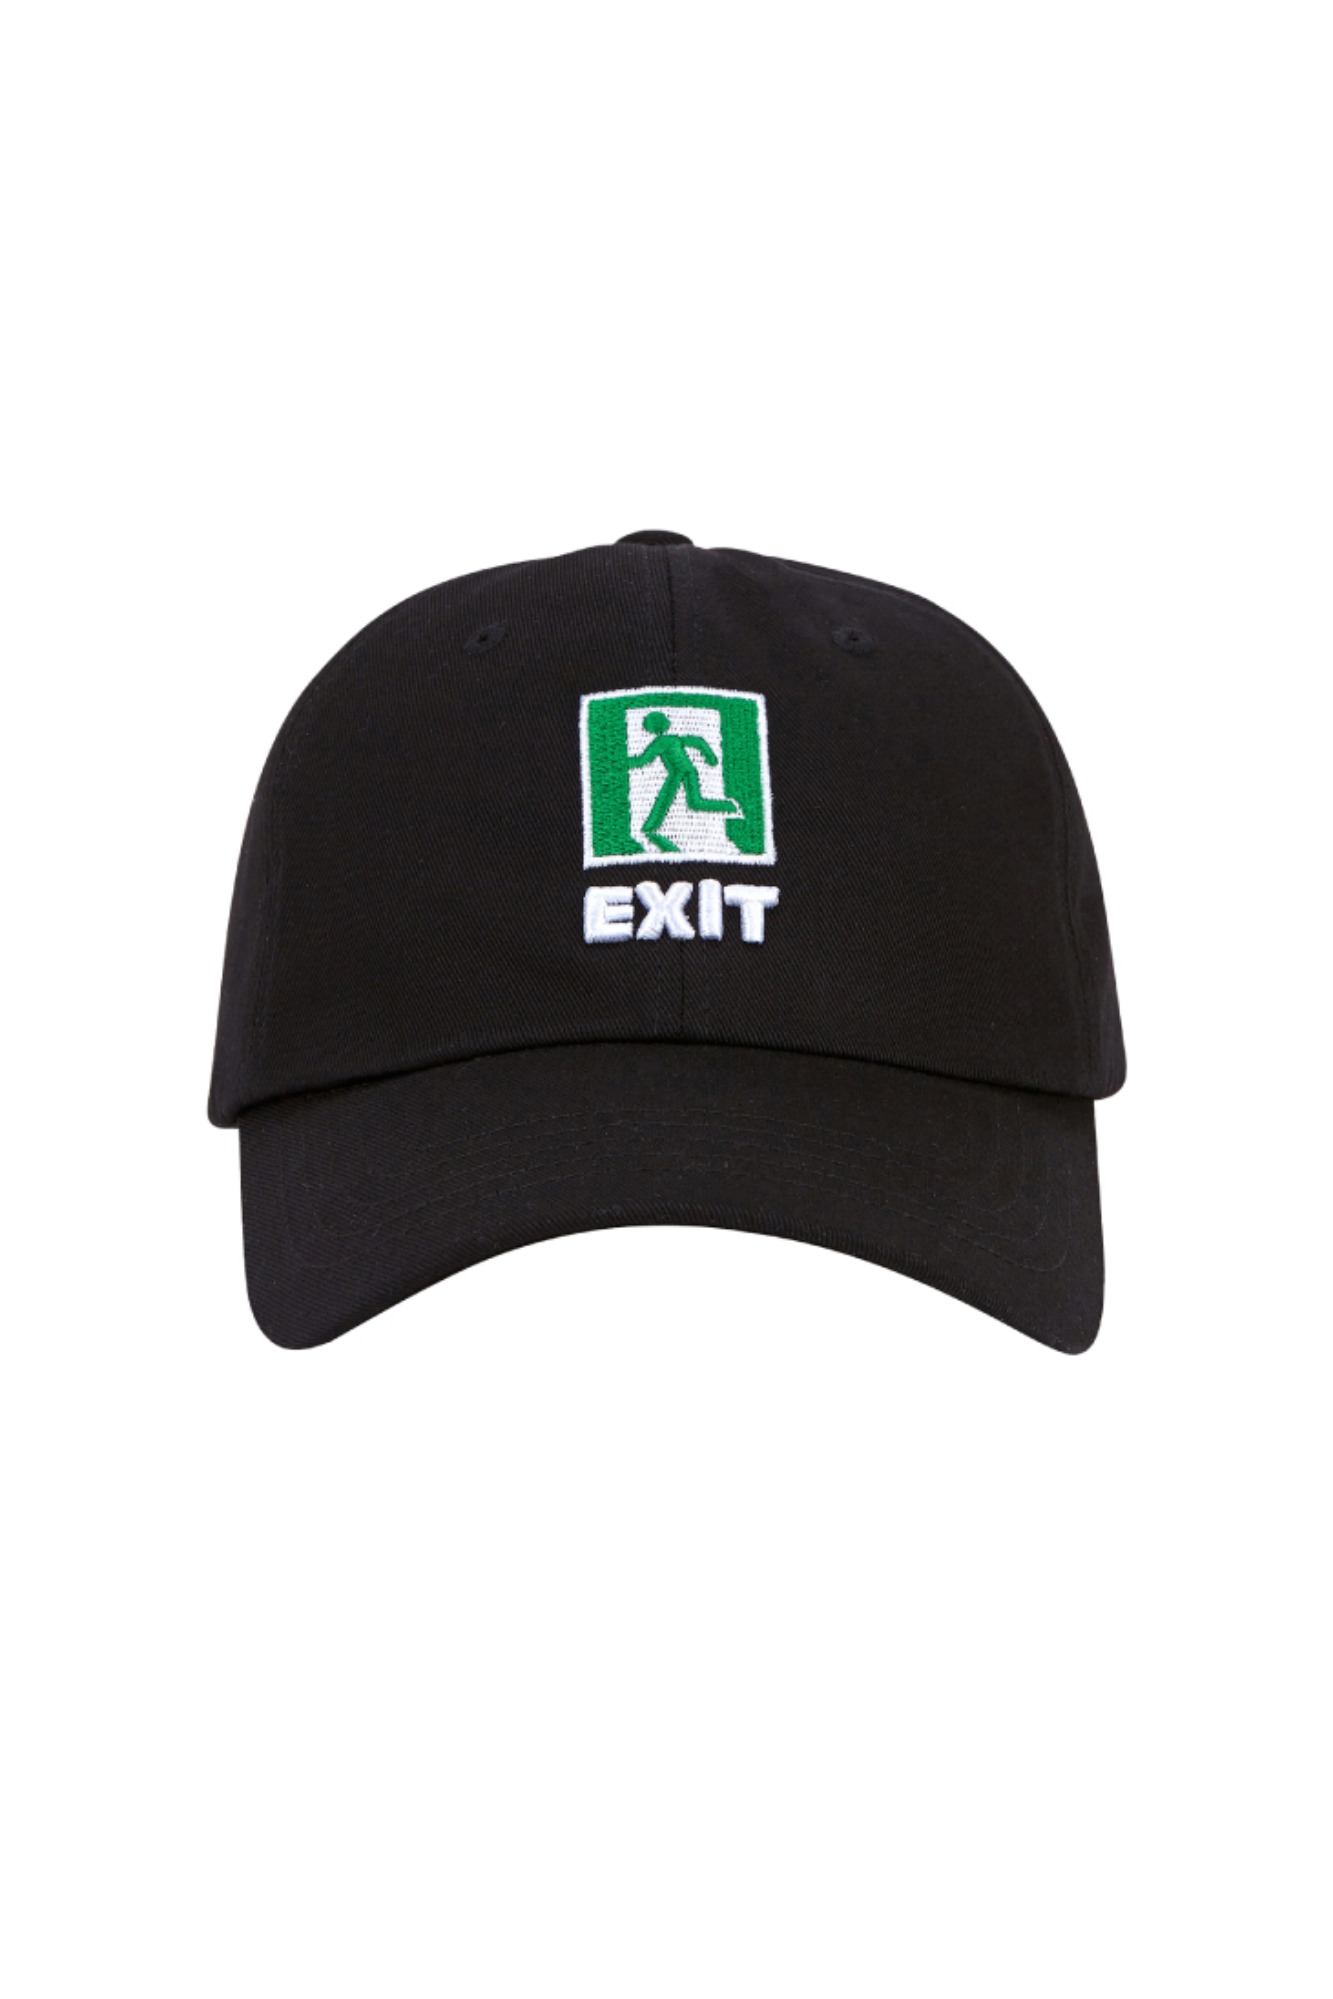 EXIT BALL CAP